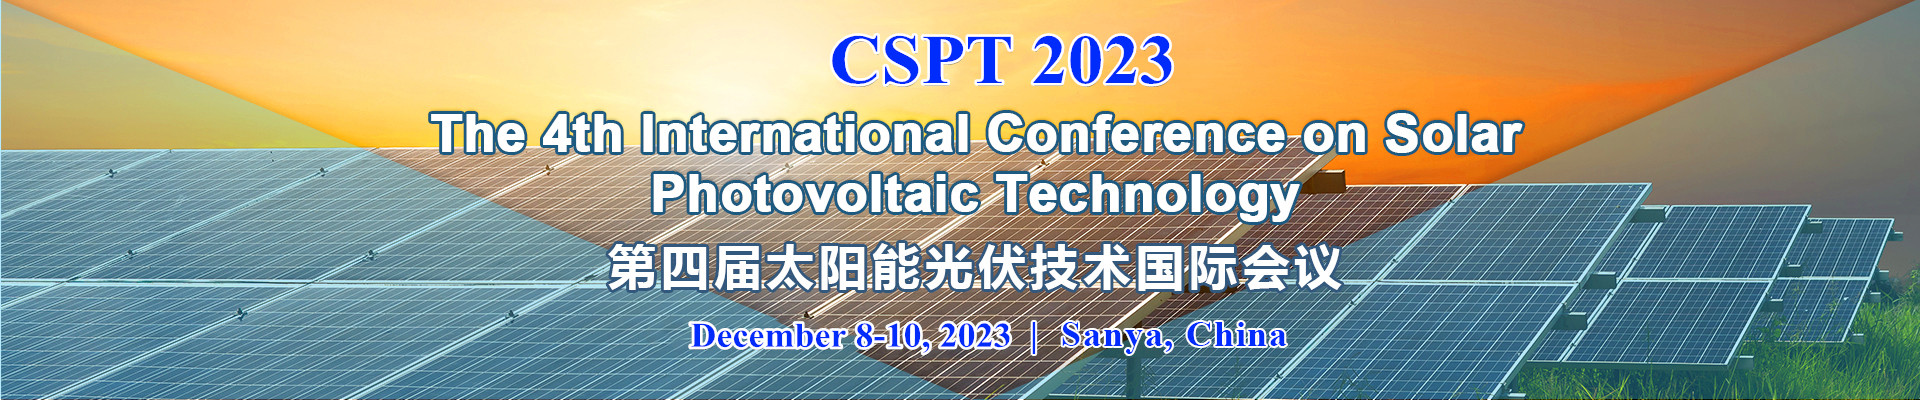 2023年太阳能光伏技术国际会议(CSPT 2023)